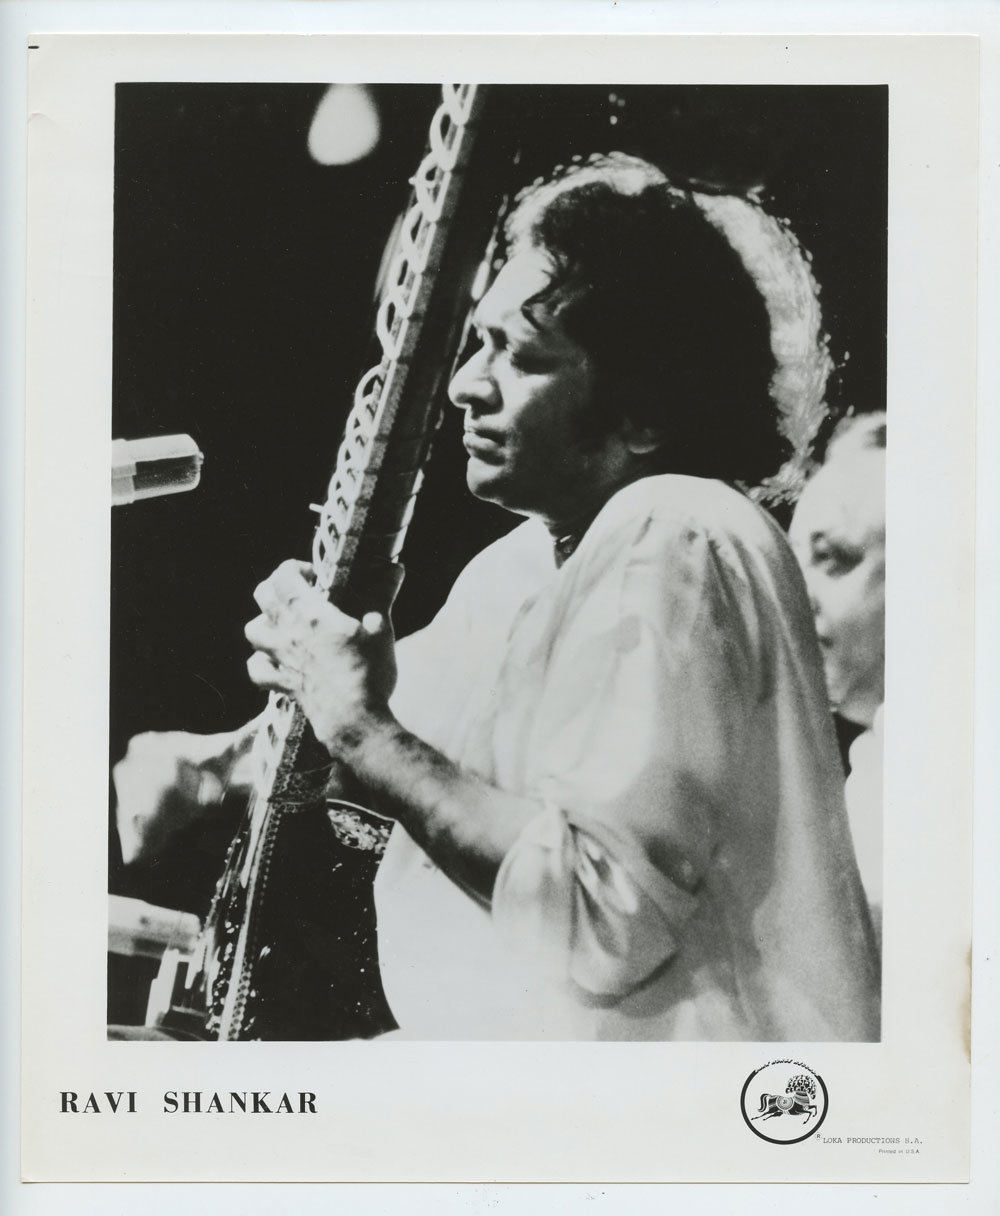 Ravi Shankar Photo 1970s LOKA Productions